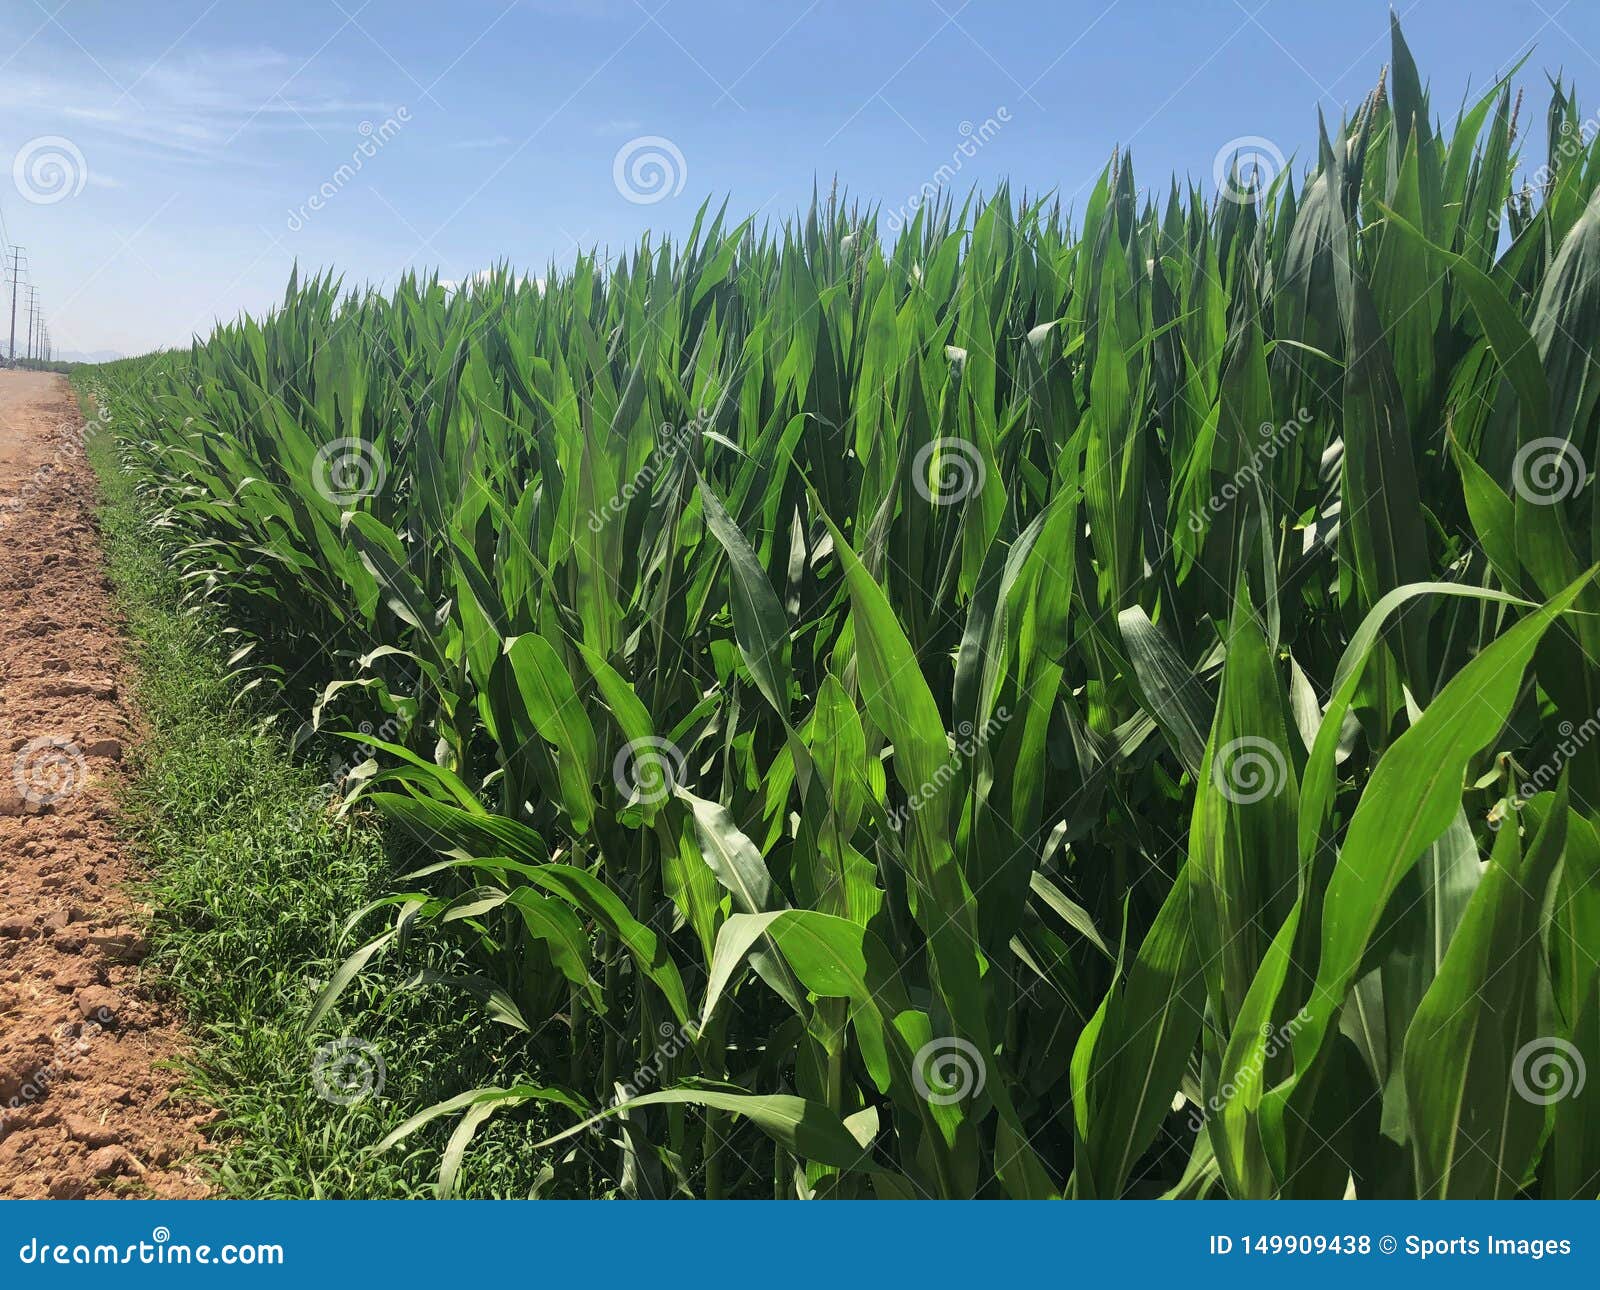 corn fields.